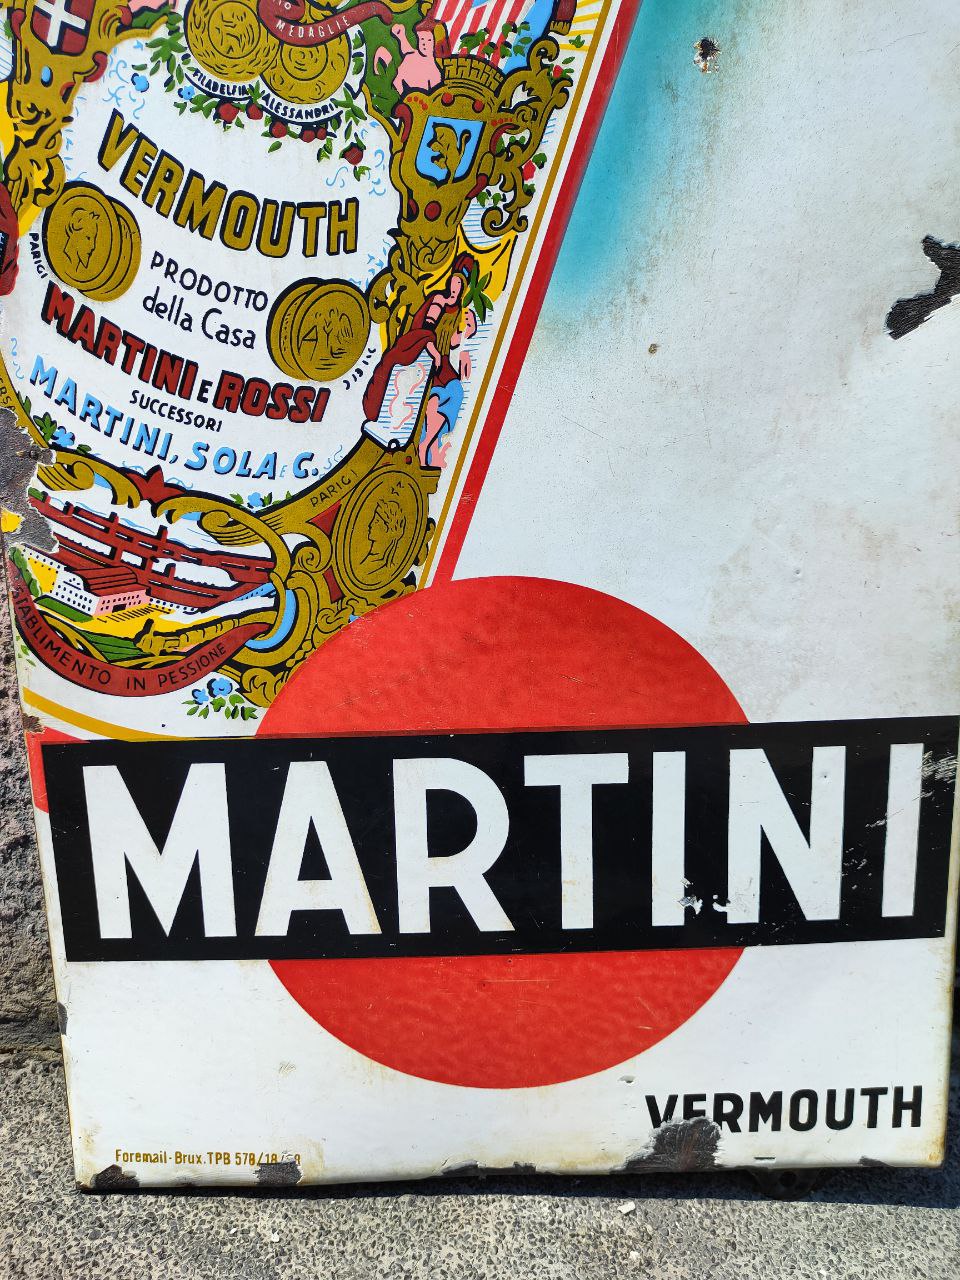 Insegna smaltata - Martini vermouth